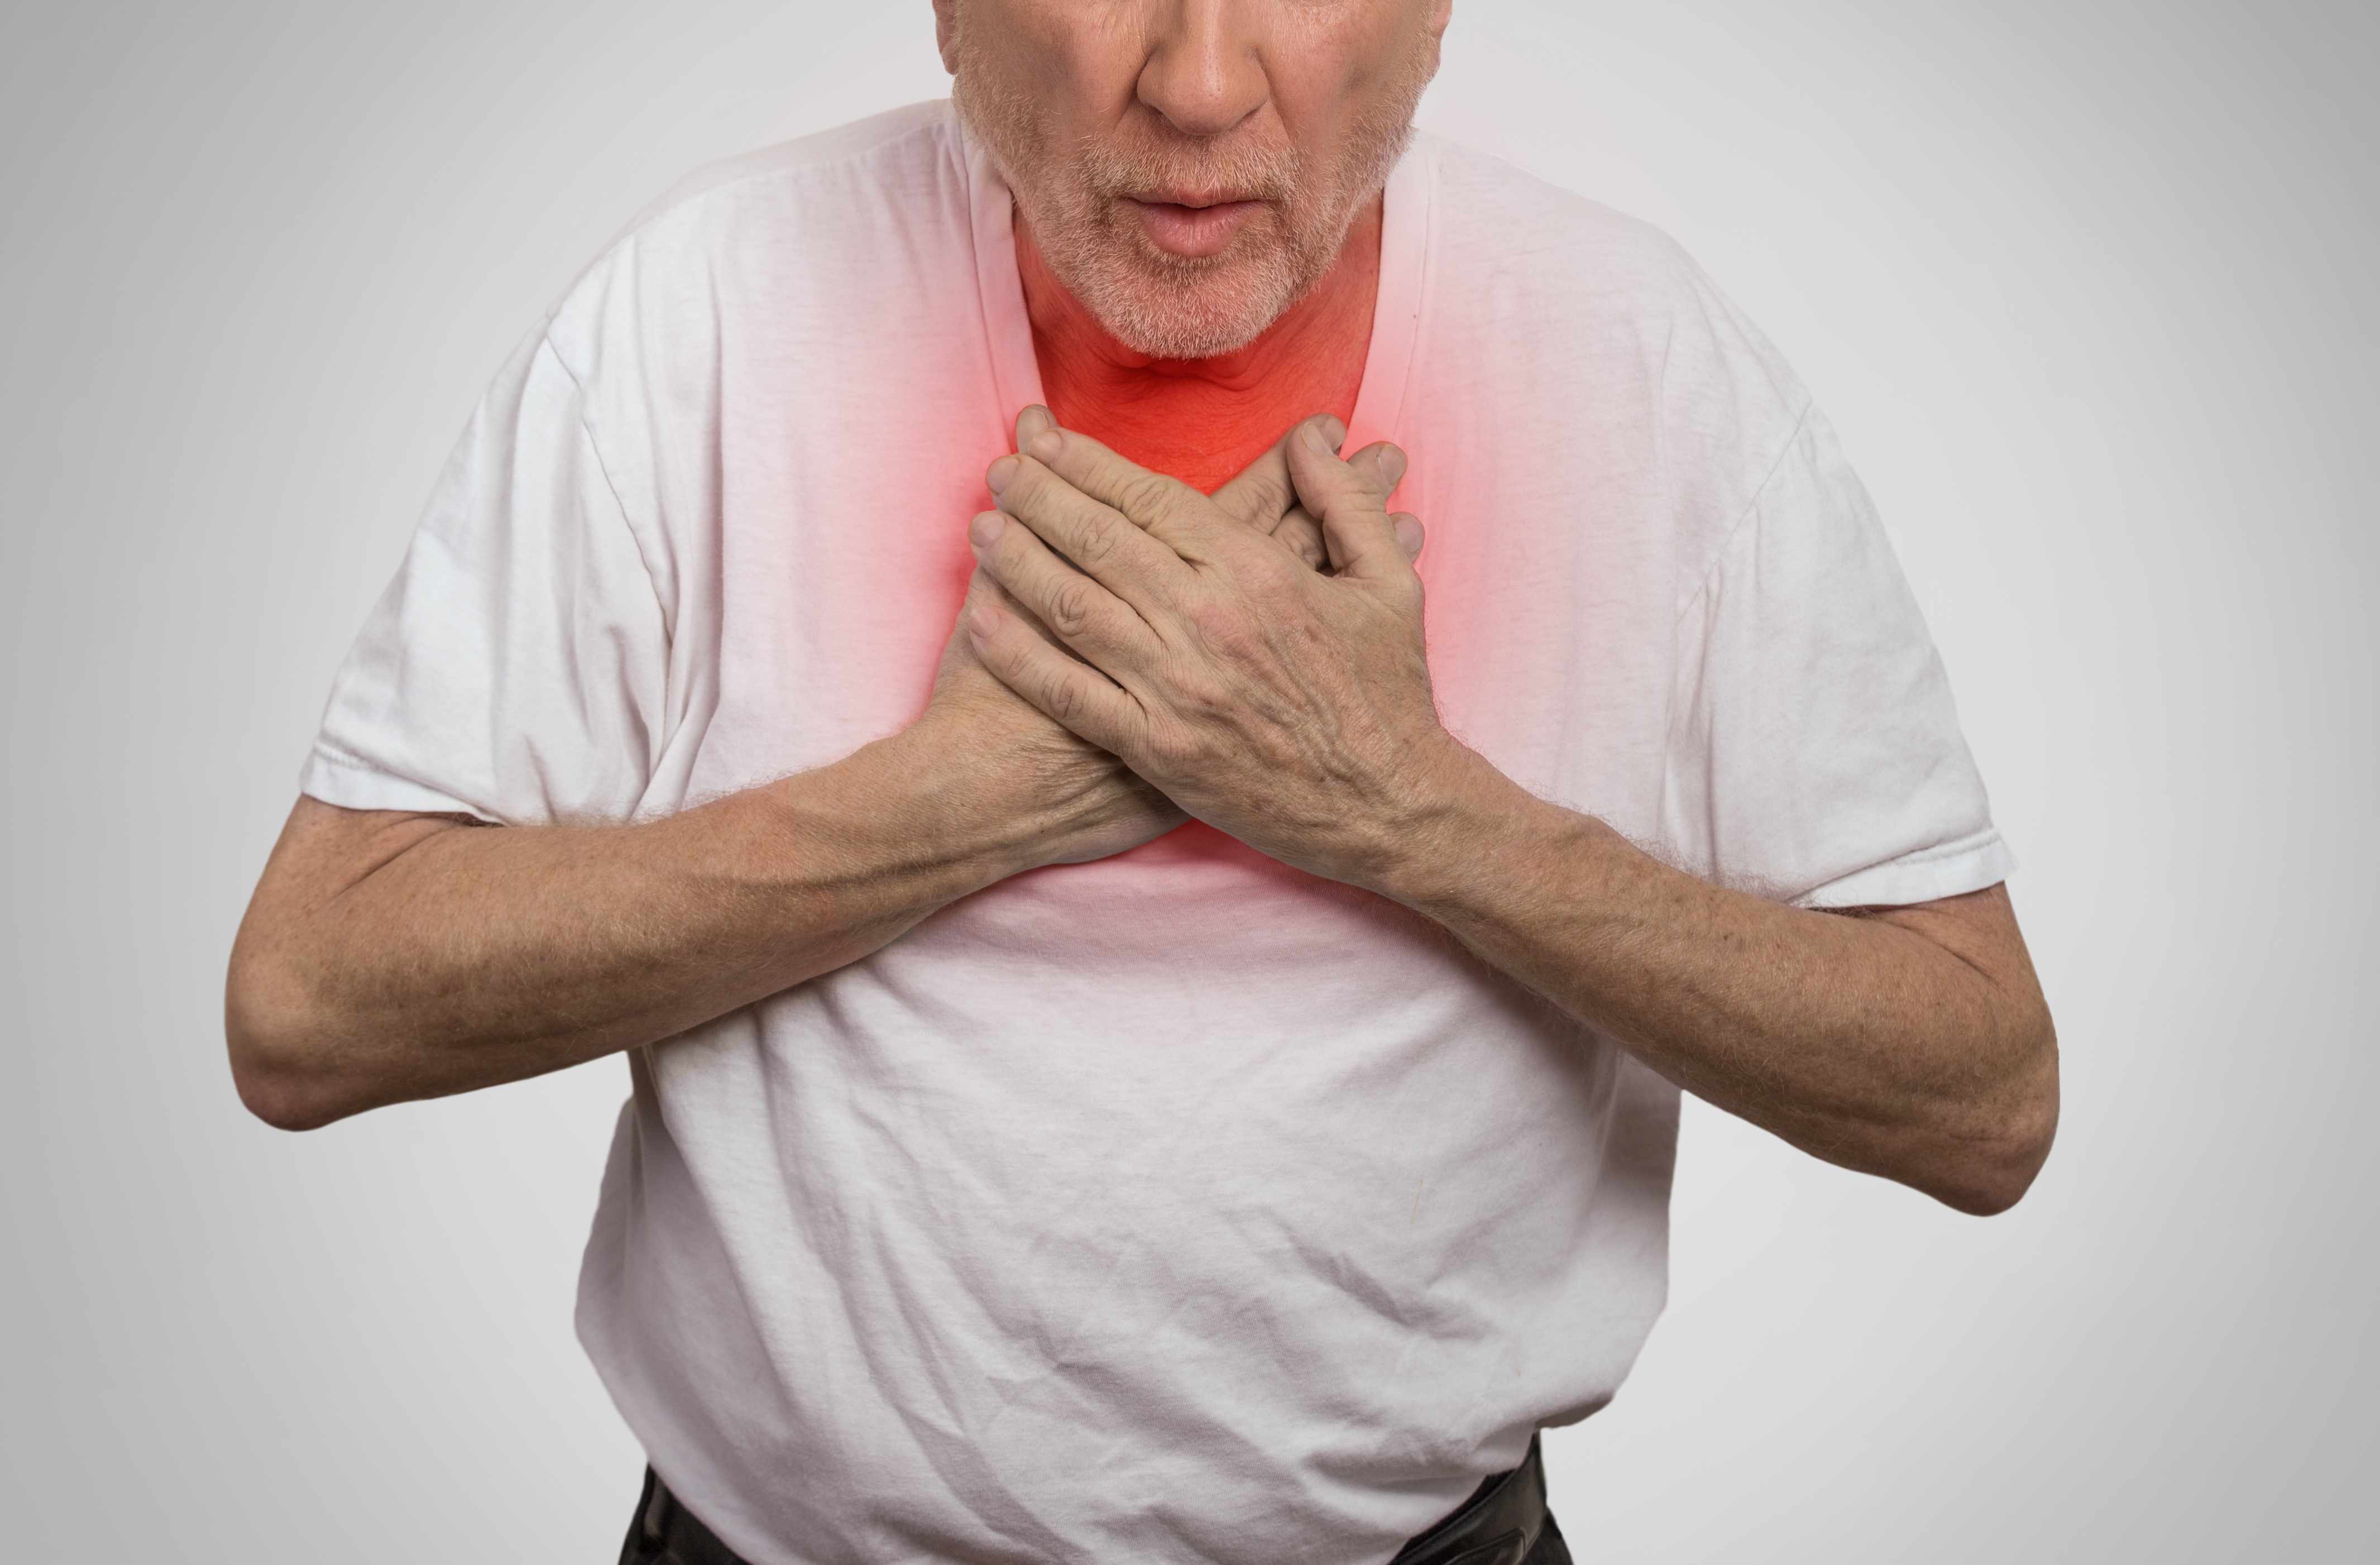 胸痛范围比较大,所以很难明确疼痛点的位置,并且在发病时还会出现胸闷